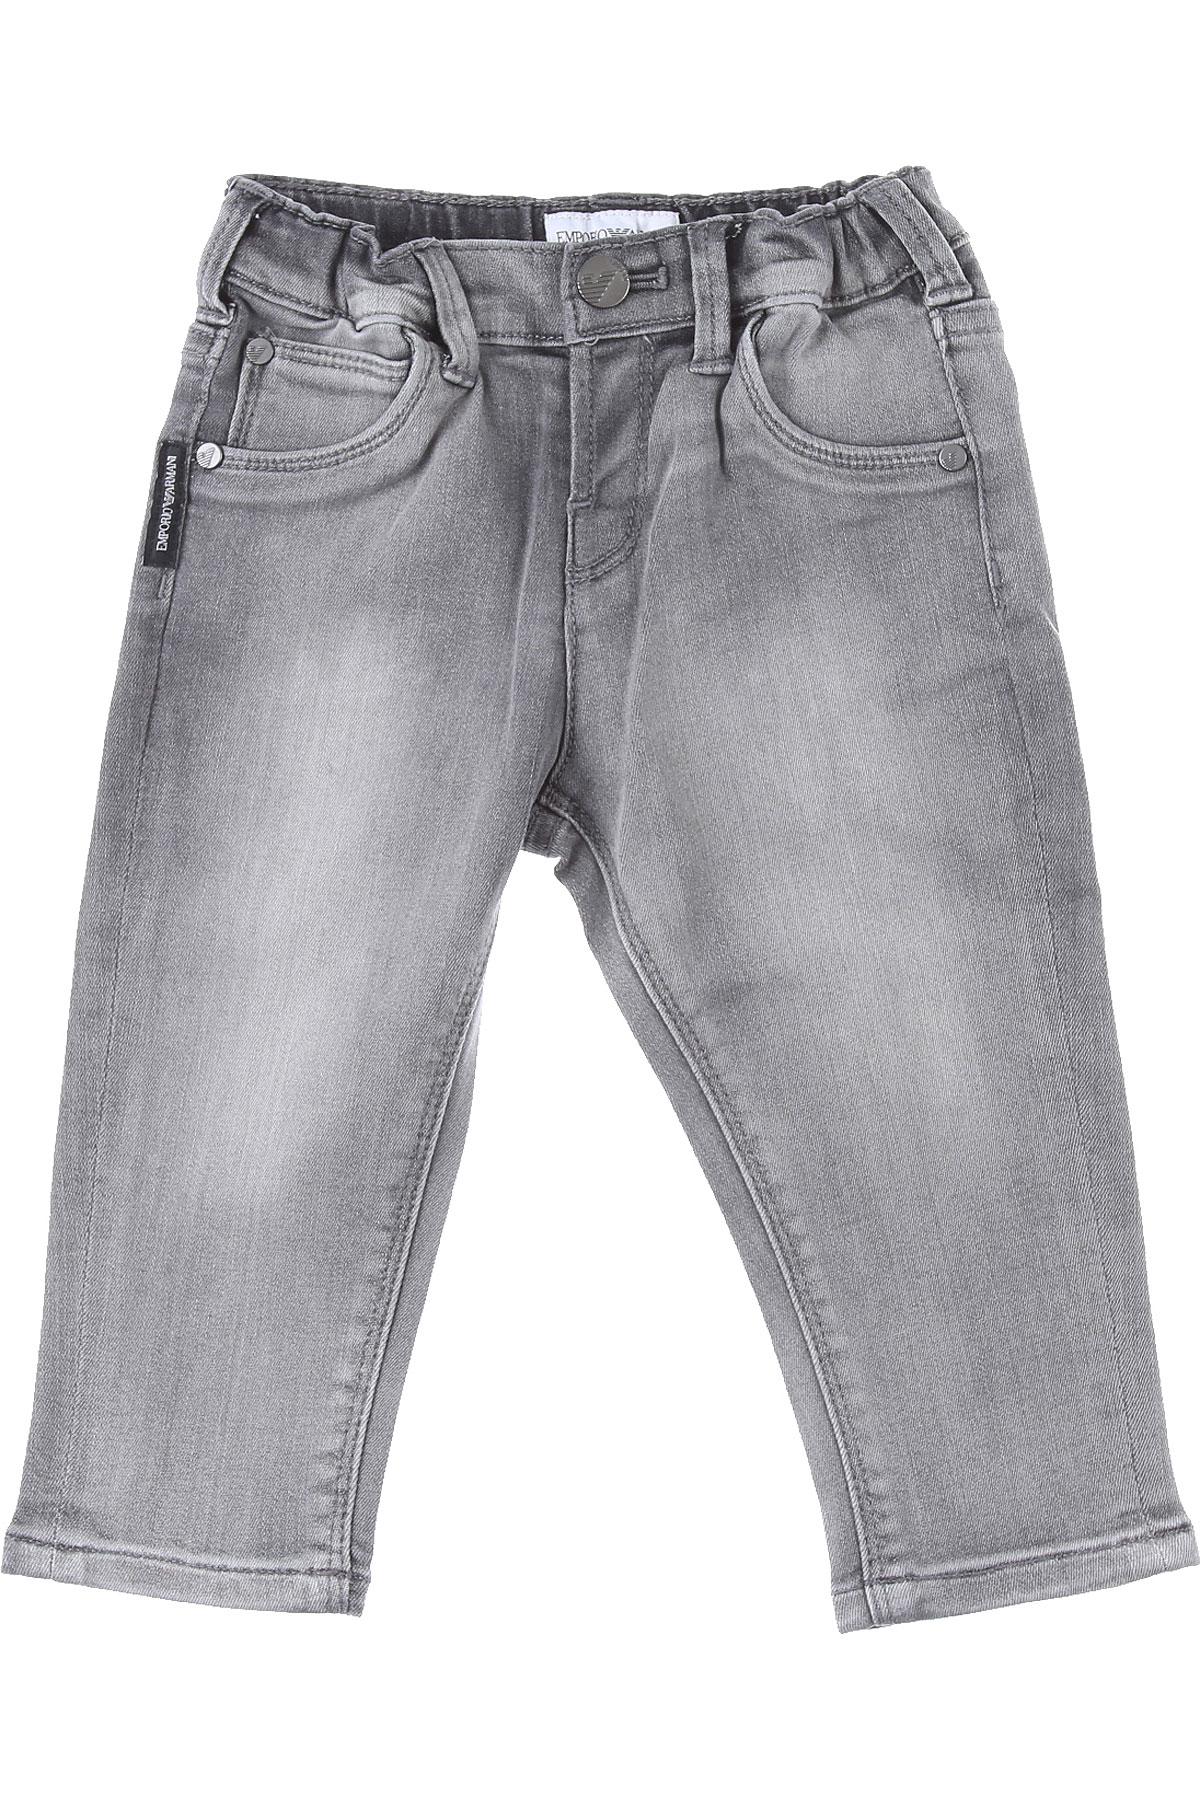 Emporio Armani Baby Jeans für Jungen Günstig im Sale, Schattiertes Denim Grau, Baumwolle, 2017, 12 M 18 M 3Y 9 M